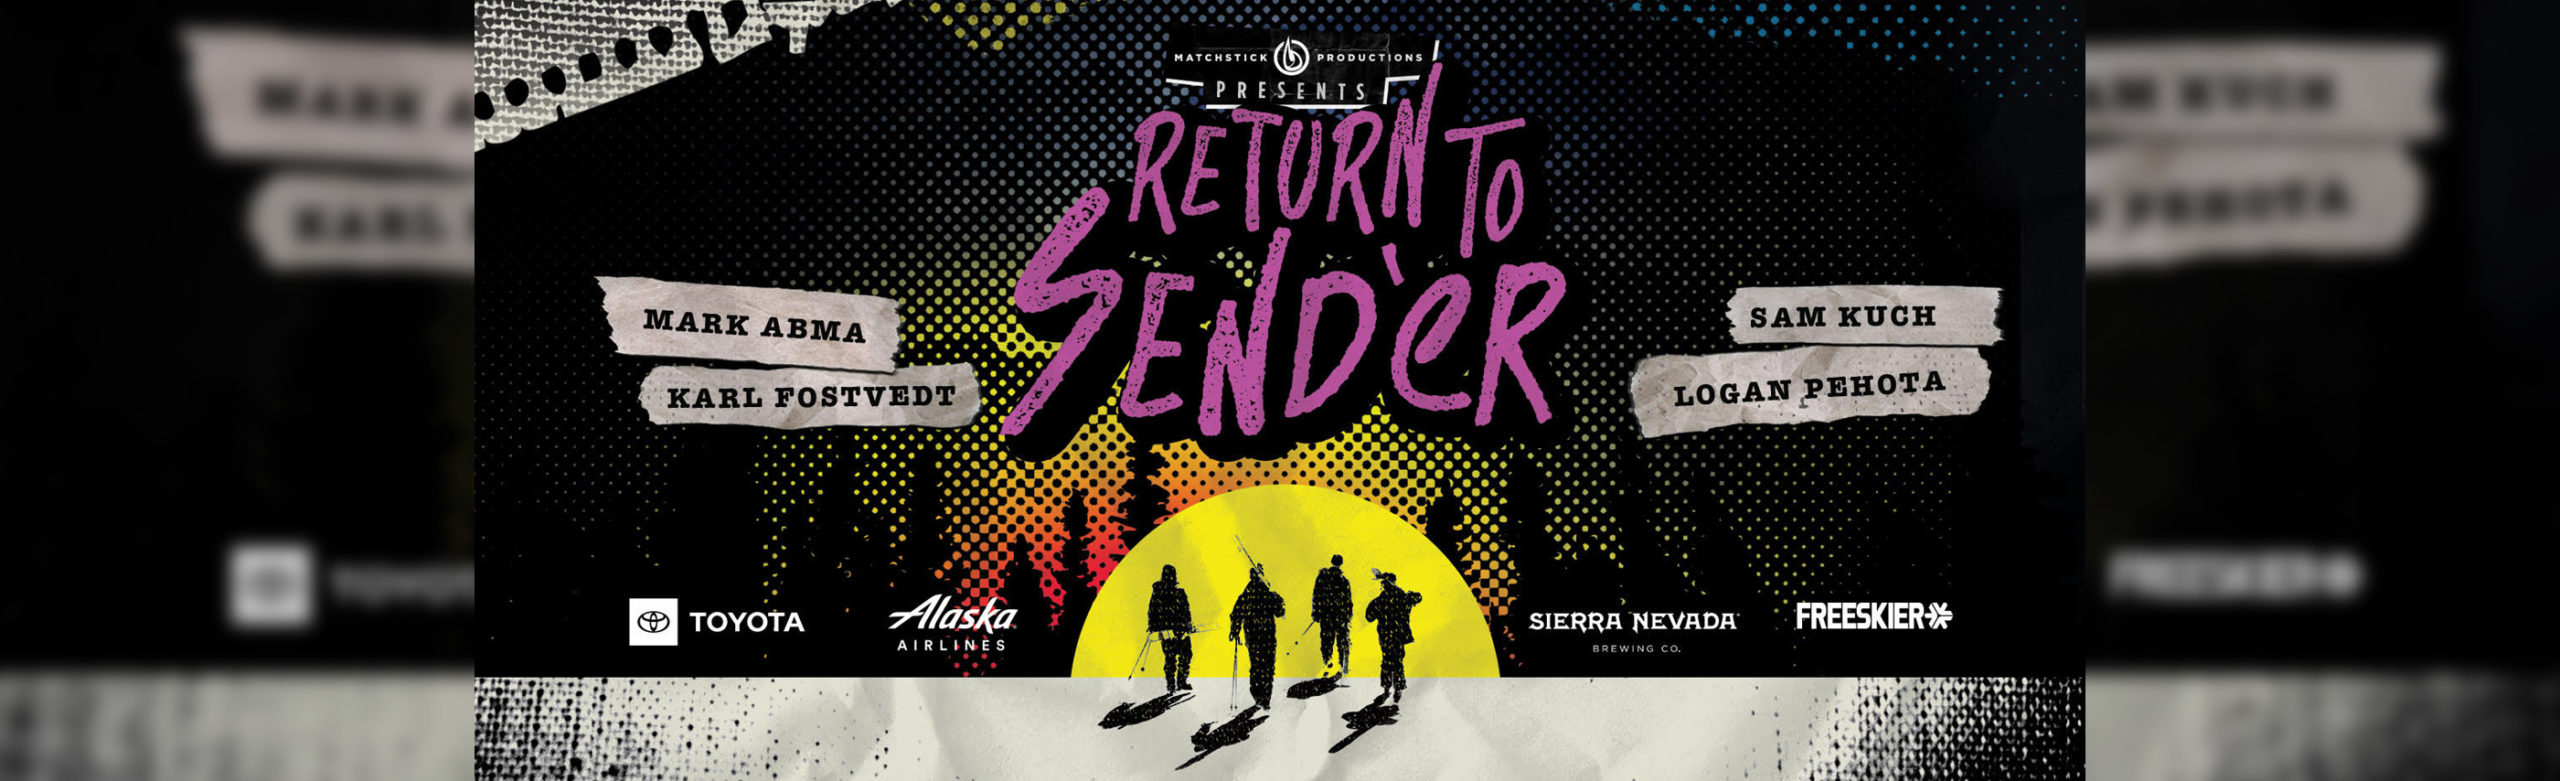 Return To Send’er